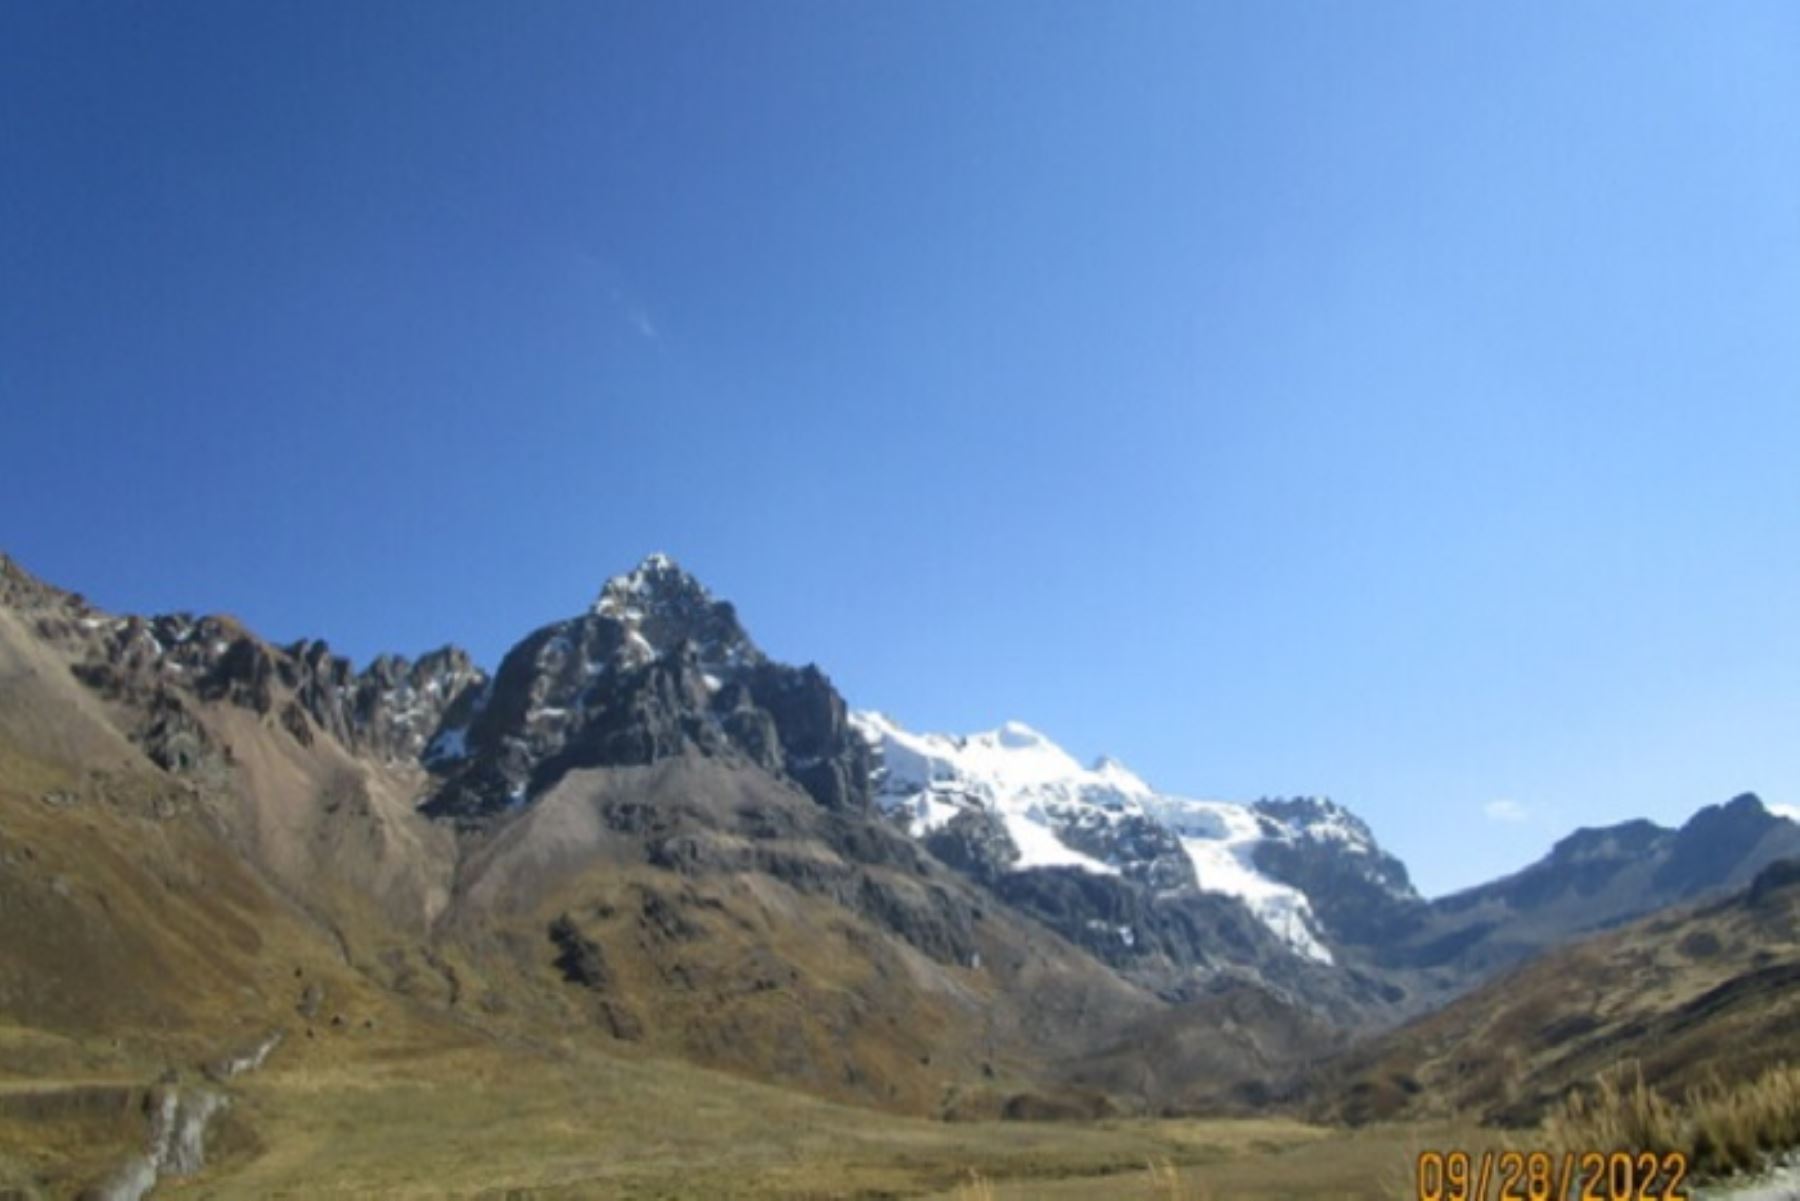 Investigadoras peruanas y del Reino Unido relatan experiencias sobre deglaciación